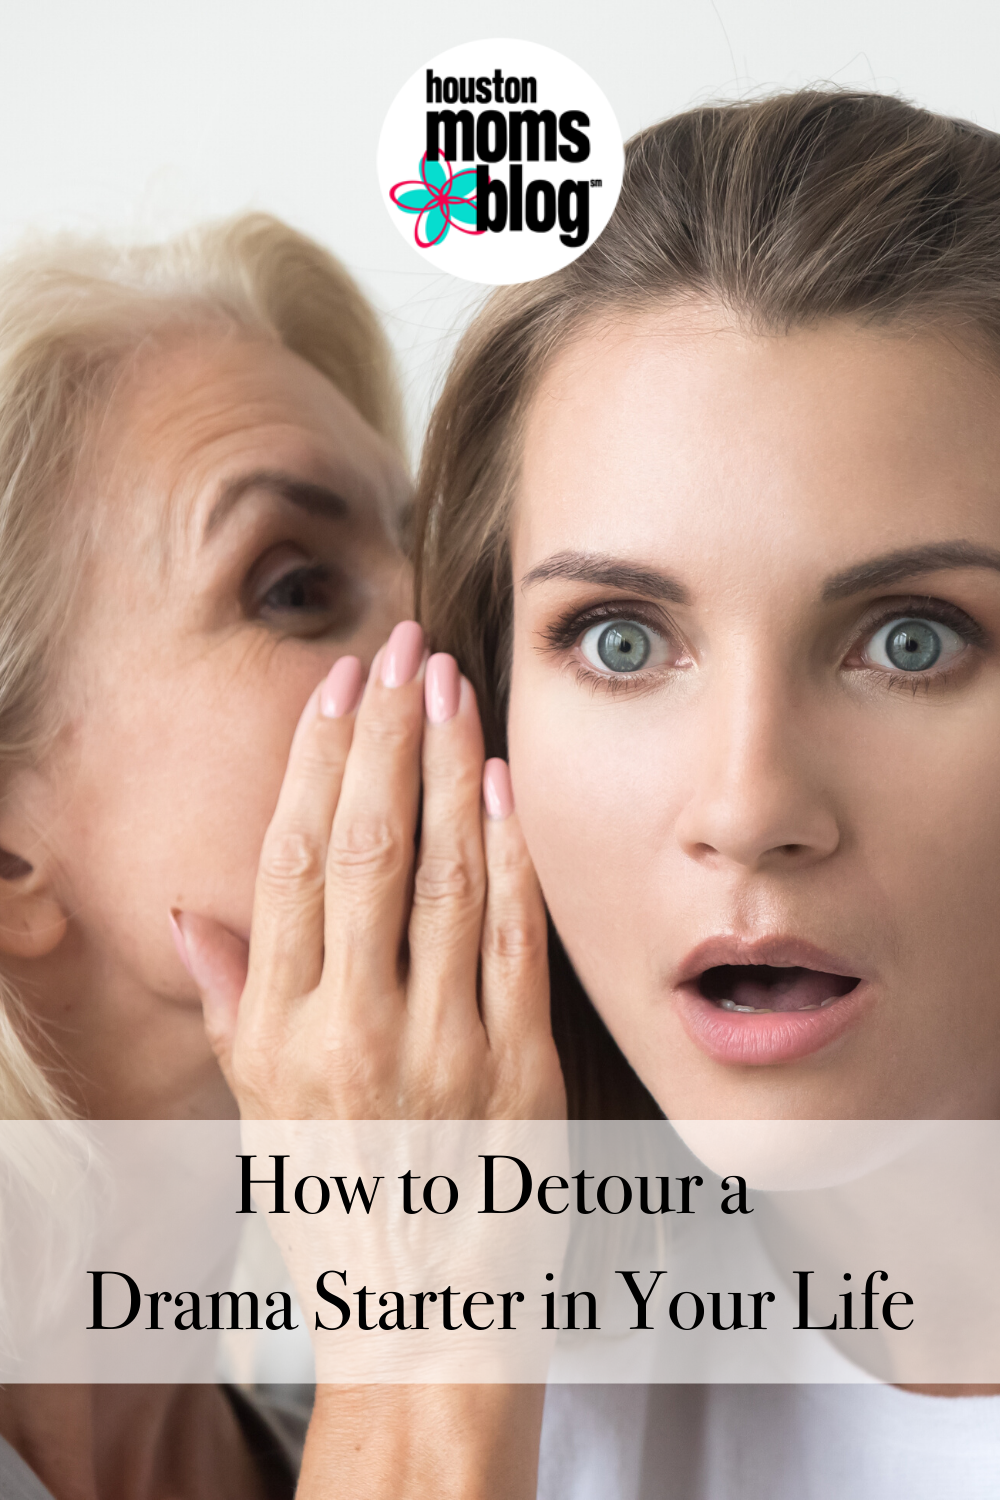 Houston Moms Blog "How to Detour a Drama Starter in Your Life" #houstonmomsblog #momsaroundhouston